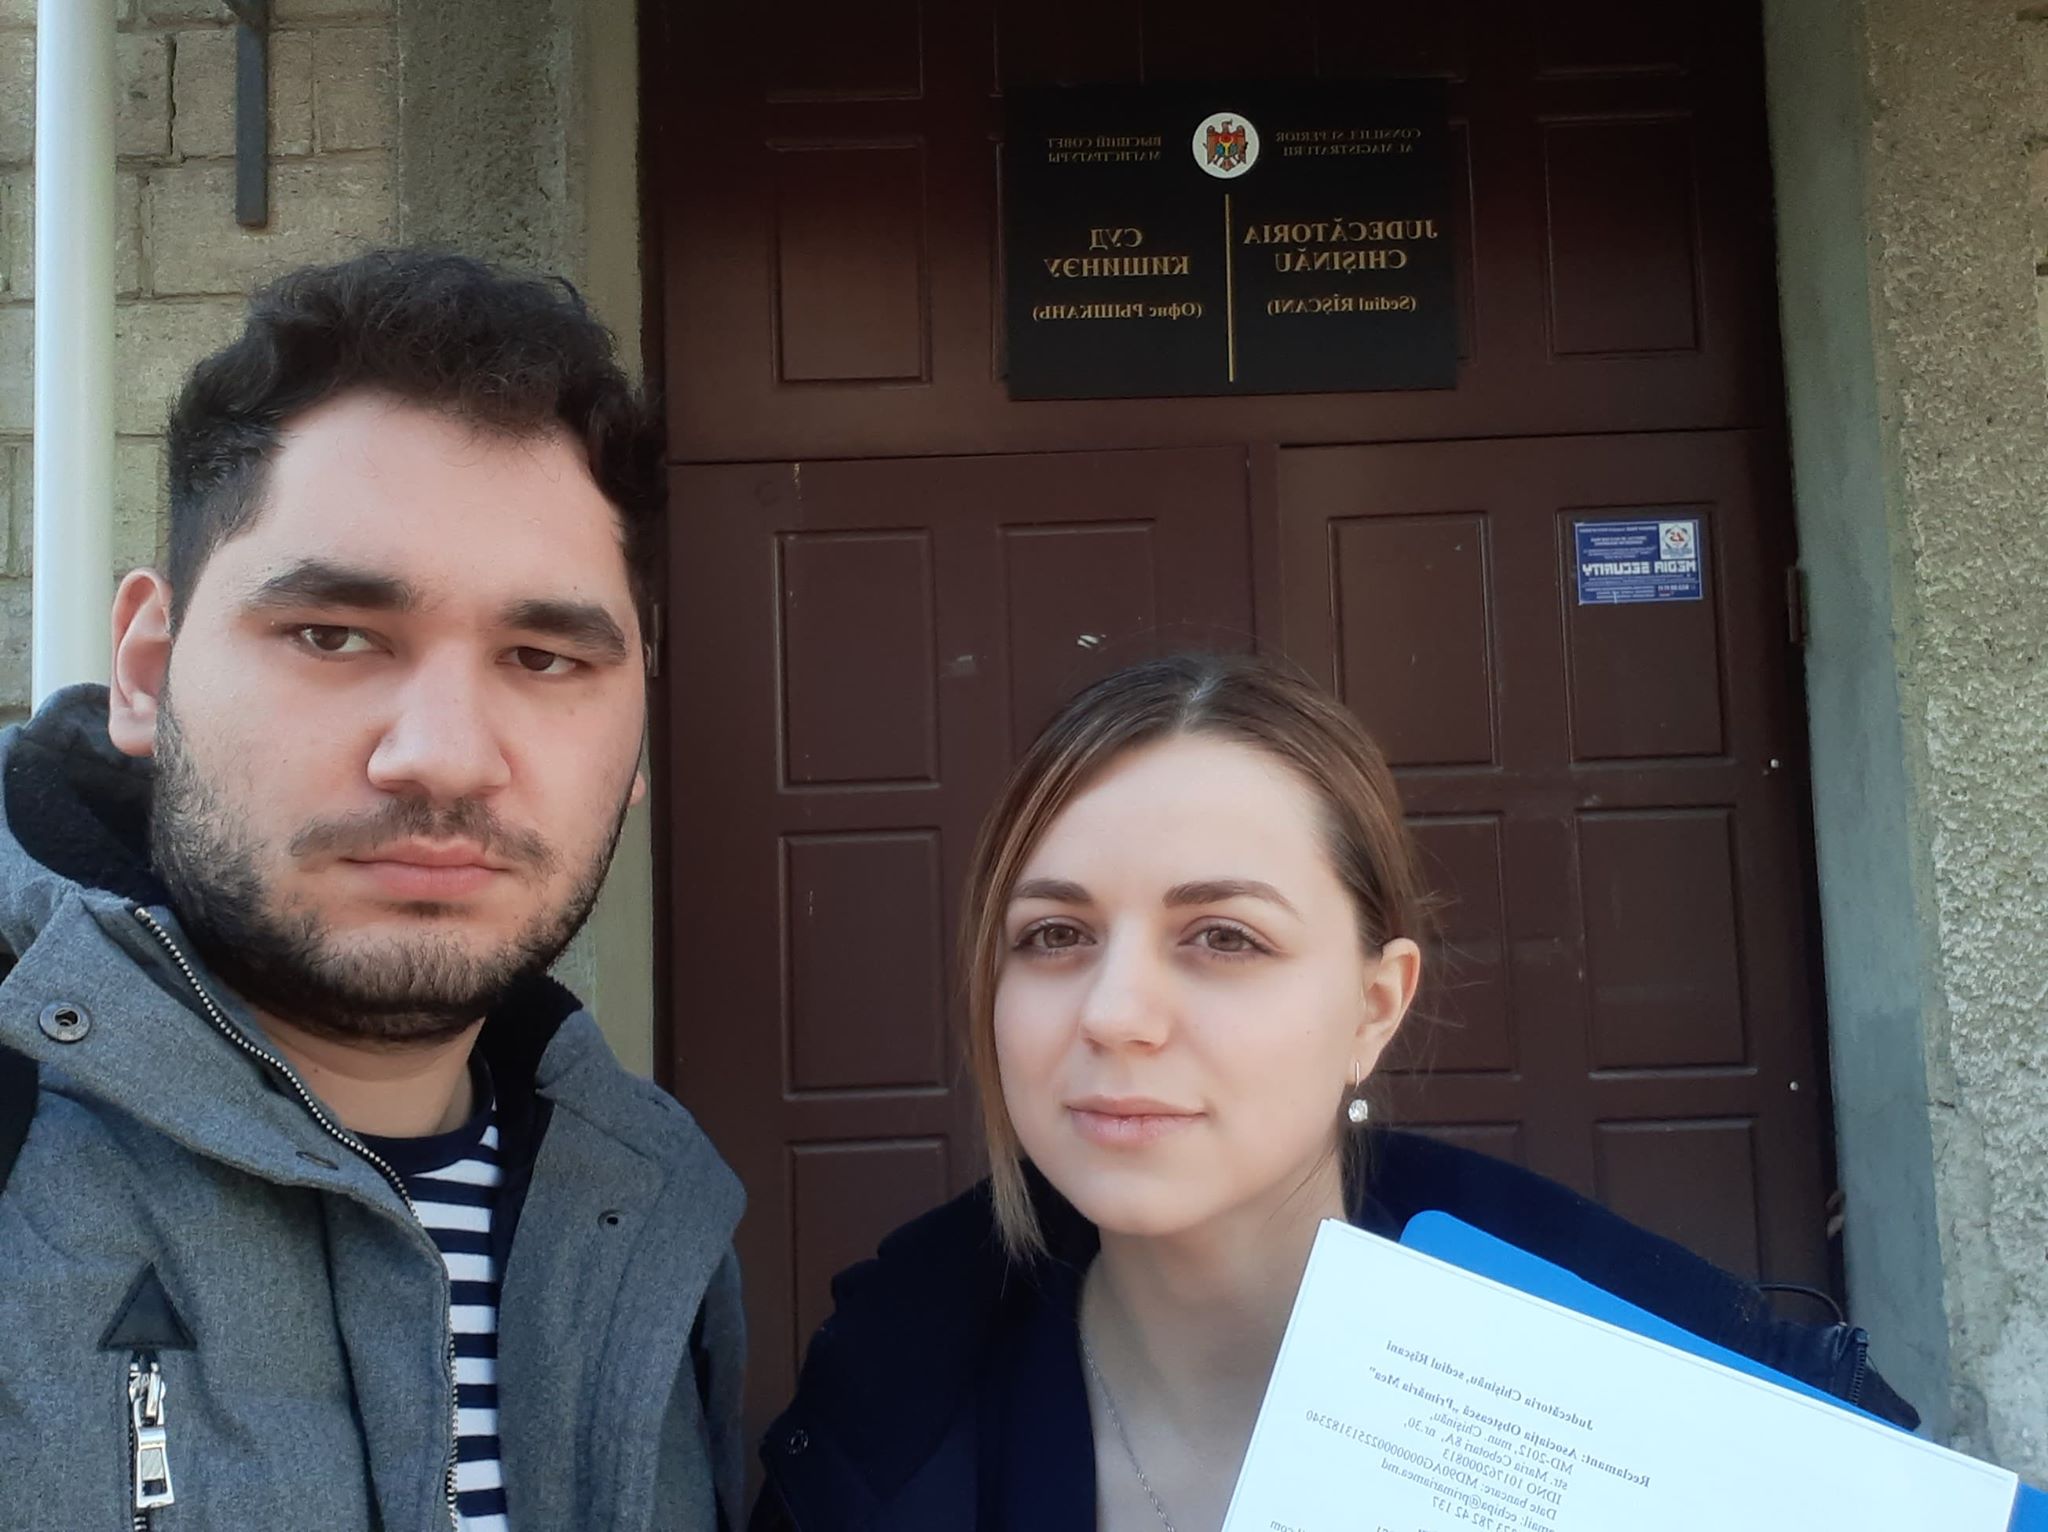 Colegii noștri, Cristina Voroneanu și Oleg Tomșa, prezenți la încă o ședință de judecată amânată. Februarie, 2020